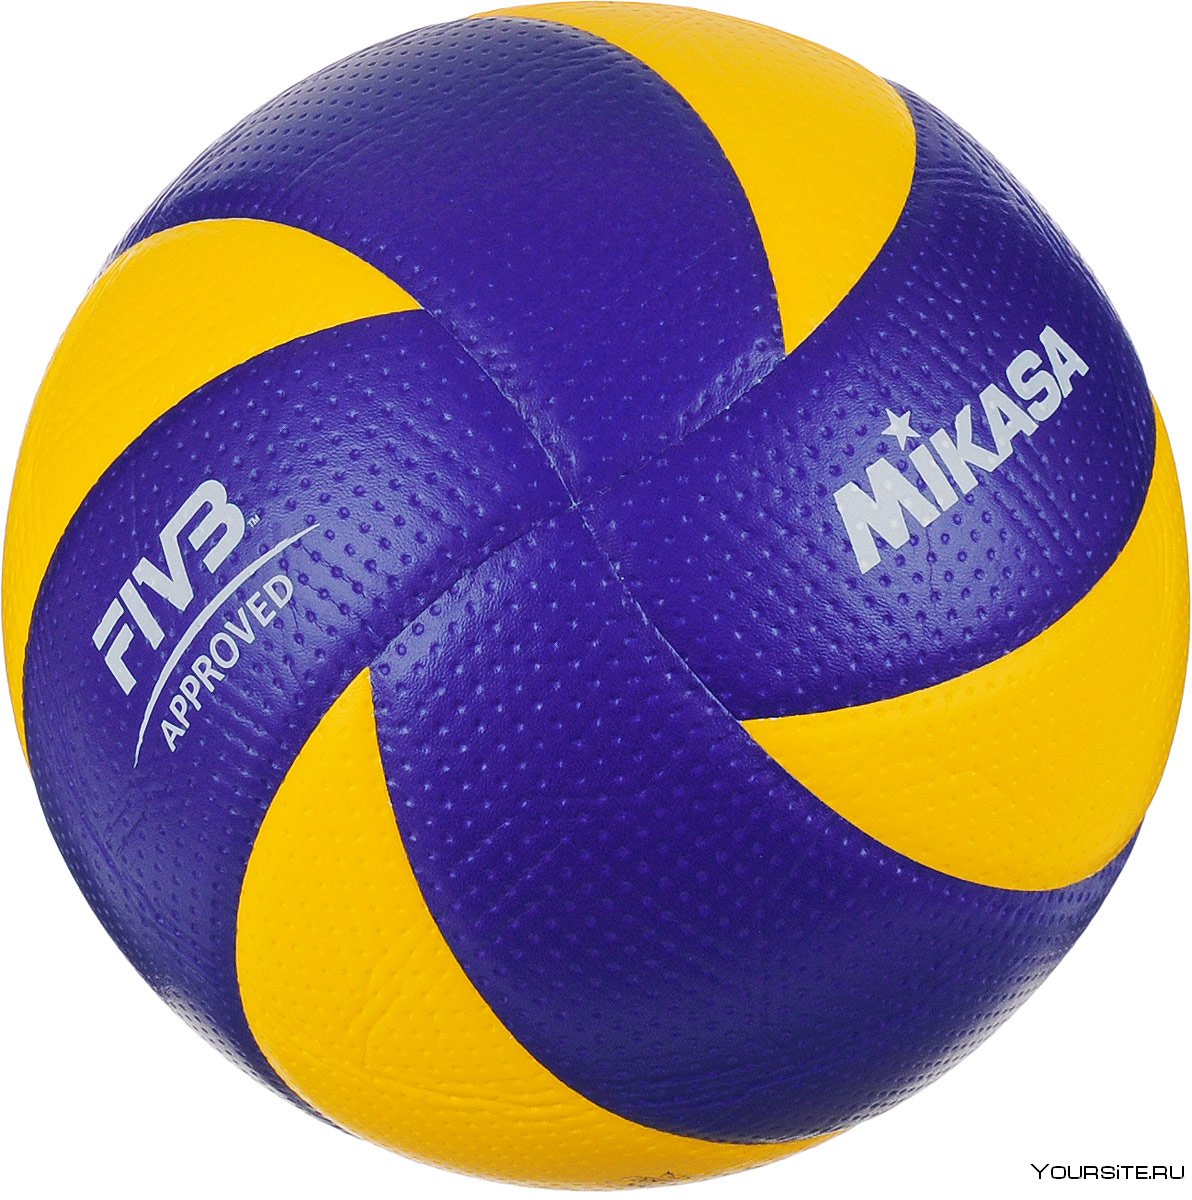 Волейбольный мяч Микаса v200w